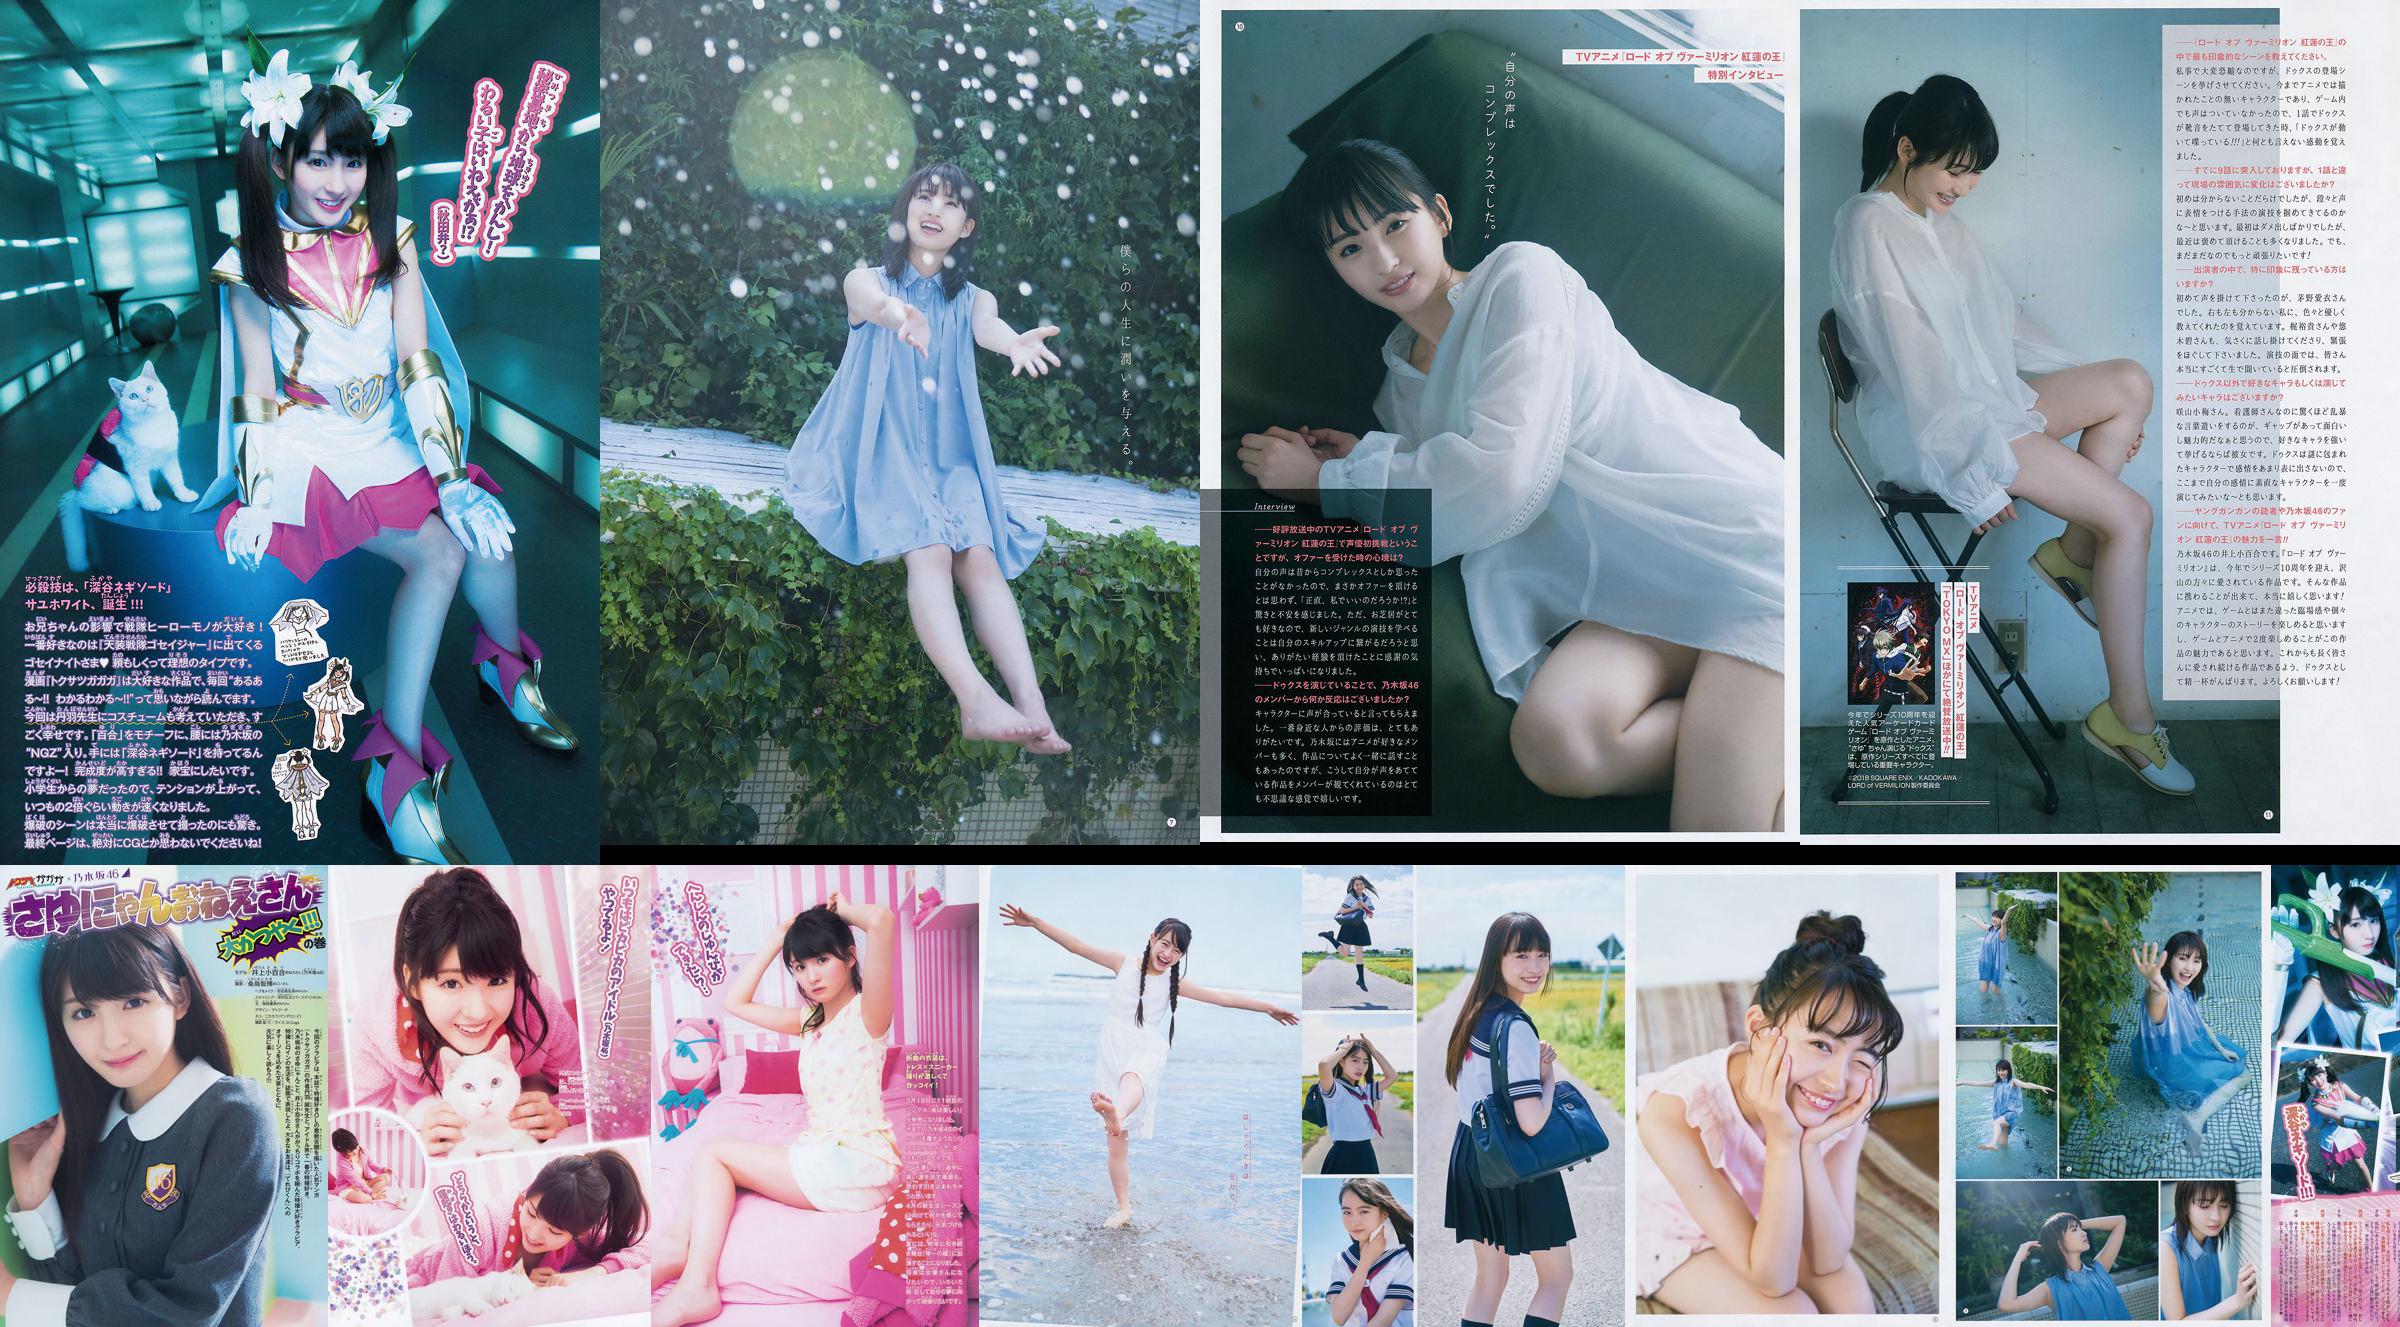 [Young Gangan] Sayuri Inoue Su arena original 2018 No.18 Photo Magazine No.4eff73 Página 1